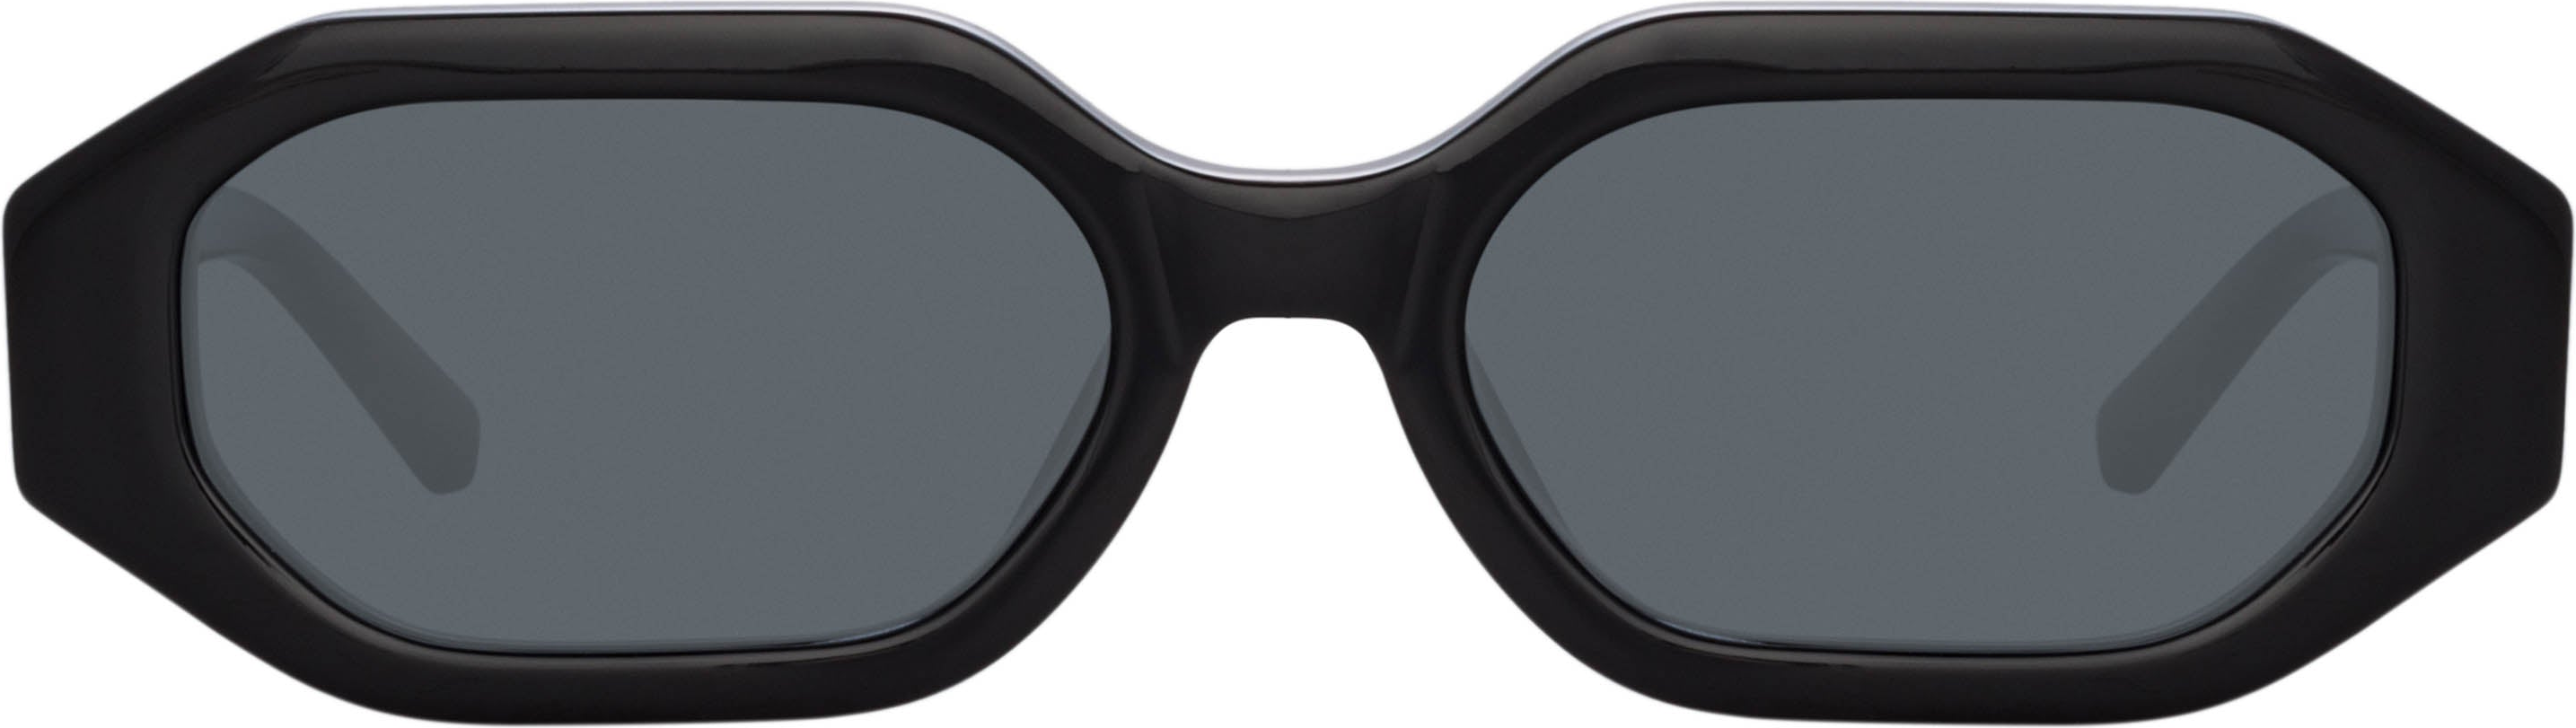 Color_ATTICO14C1SUN - The Attico Irene Angular Sunglasses in Black